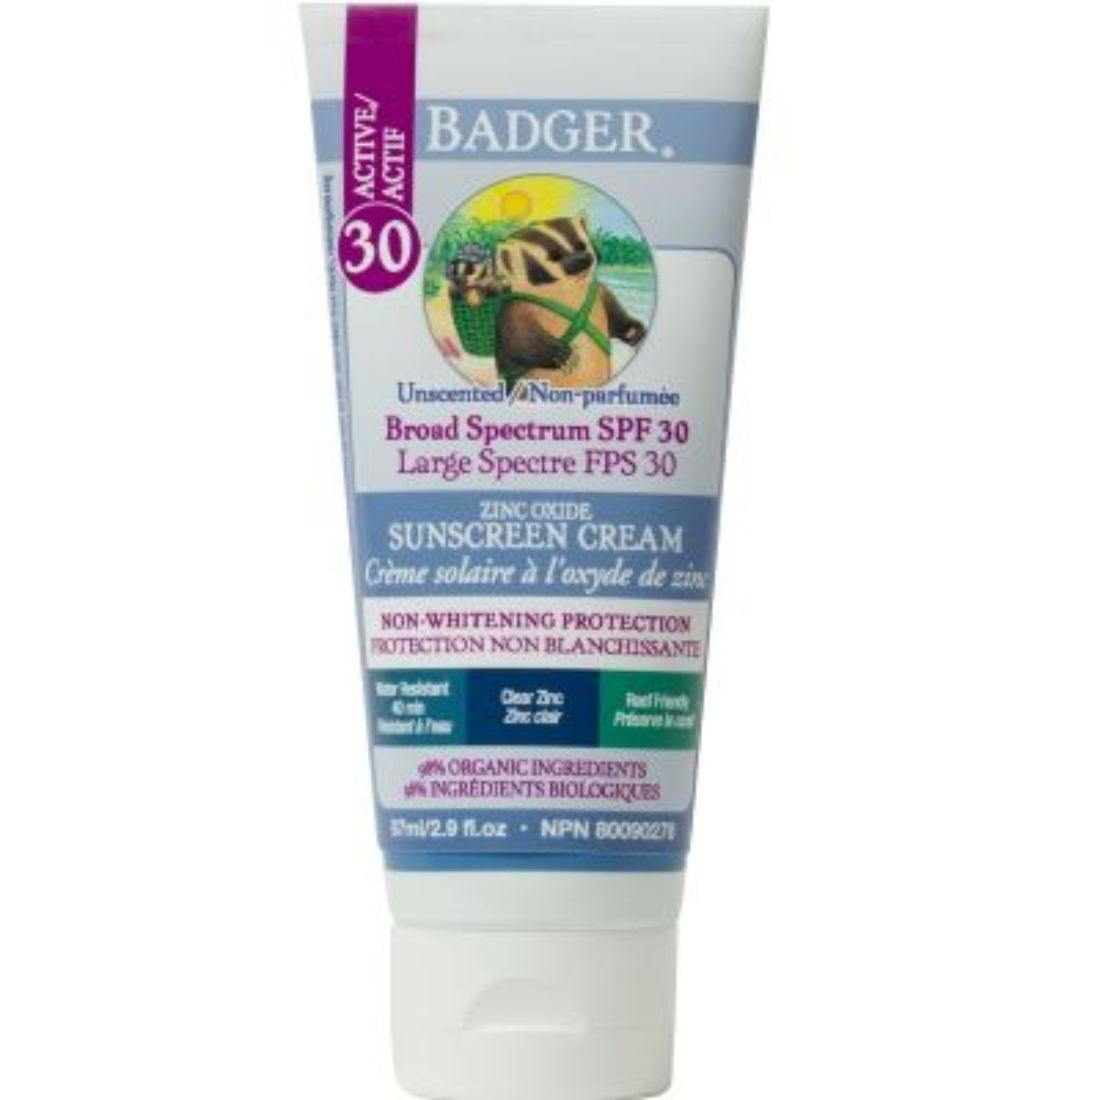 Badger SPF 30 Clear Zinc Sunscreen Cream (NEW!)